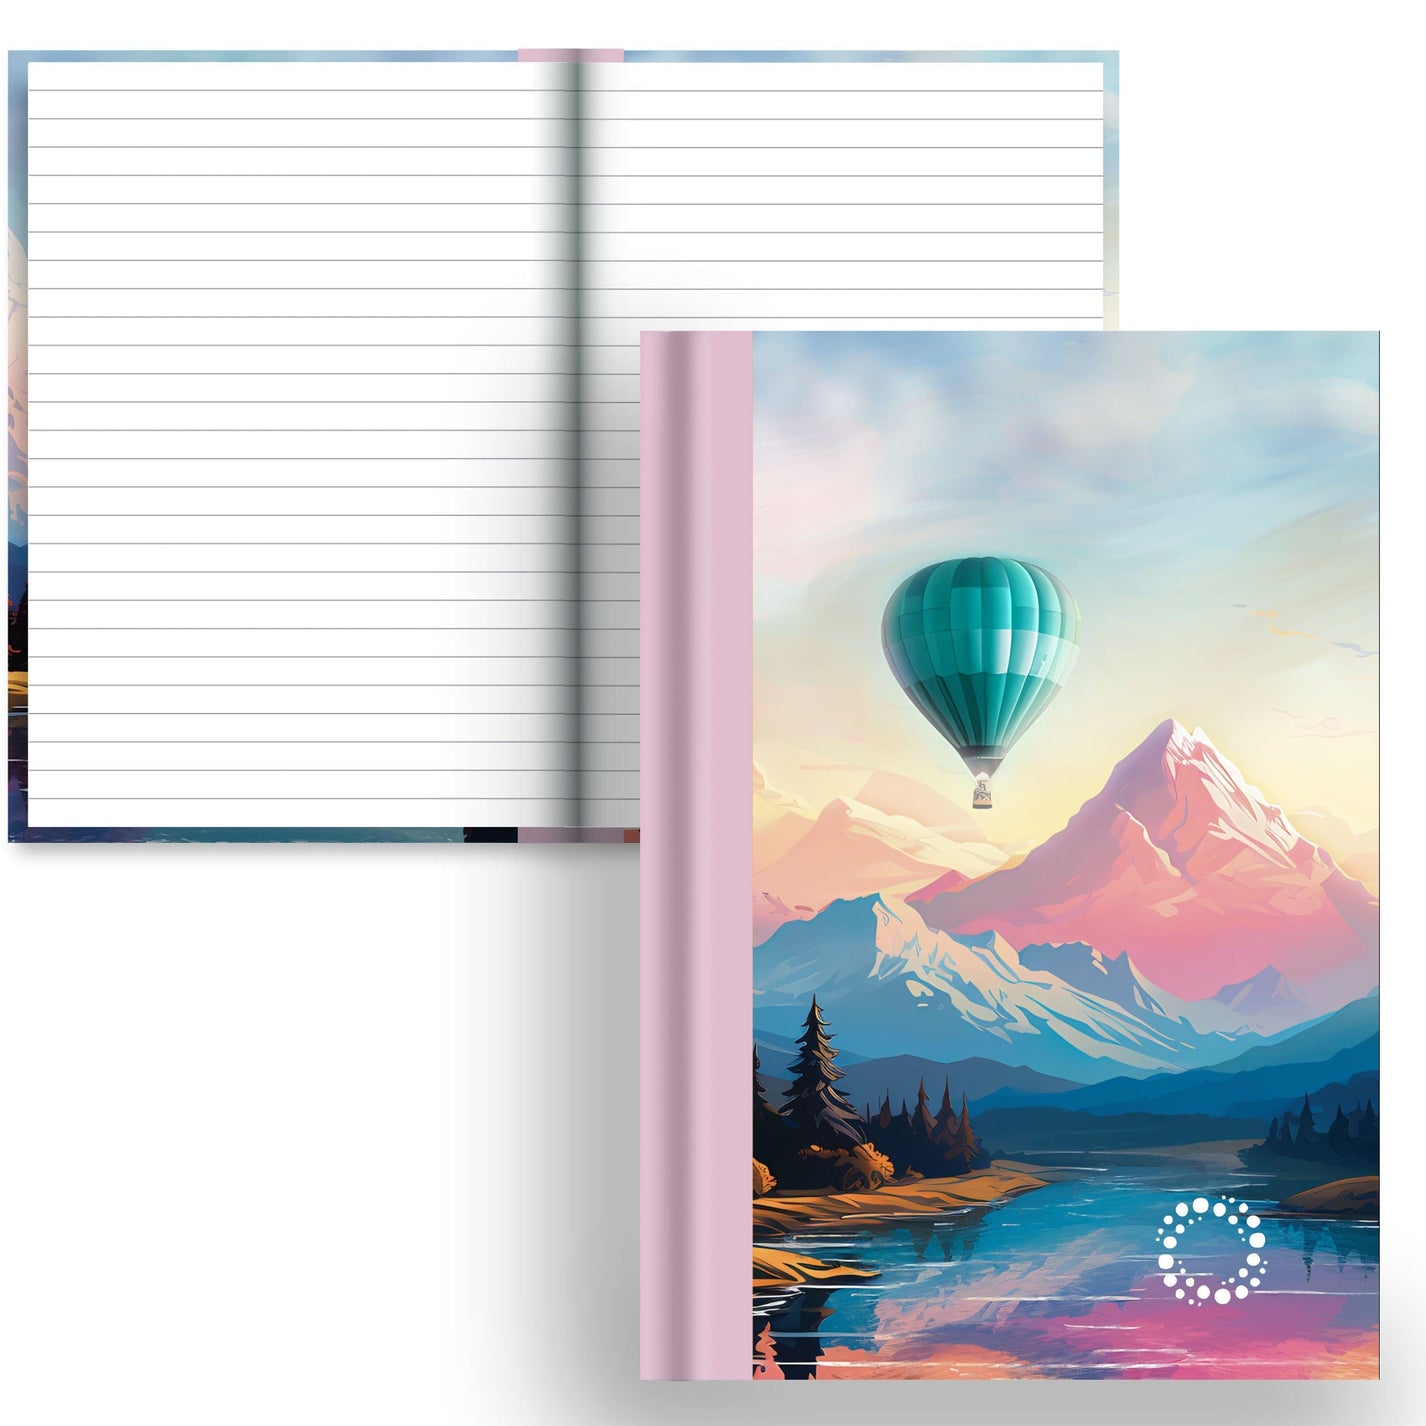 DayDot Journals A5 Notebook Lined Paper Zephyr - A5 Hardback Notebook